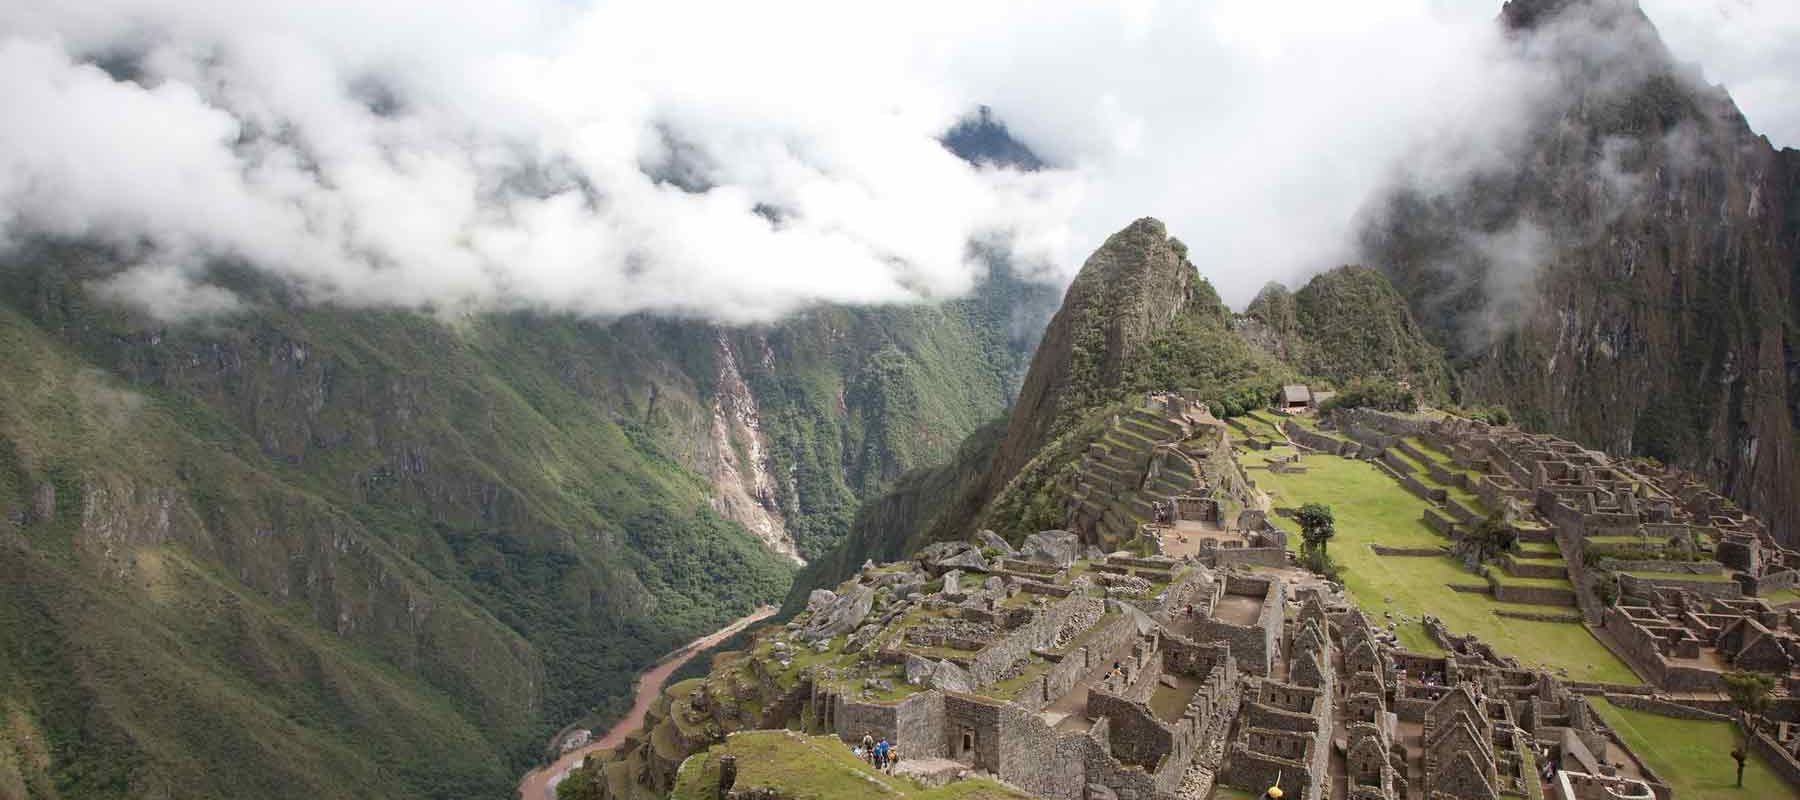 Machu Picchu Peru, mountains and cliffs scenic view